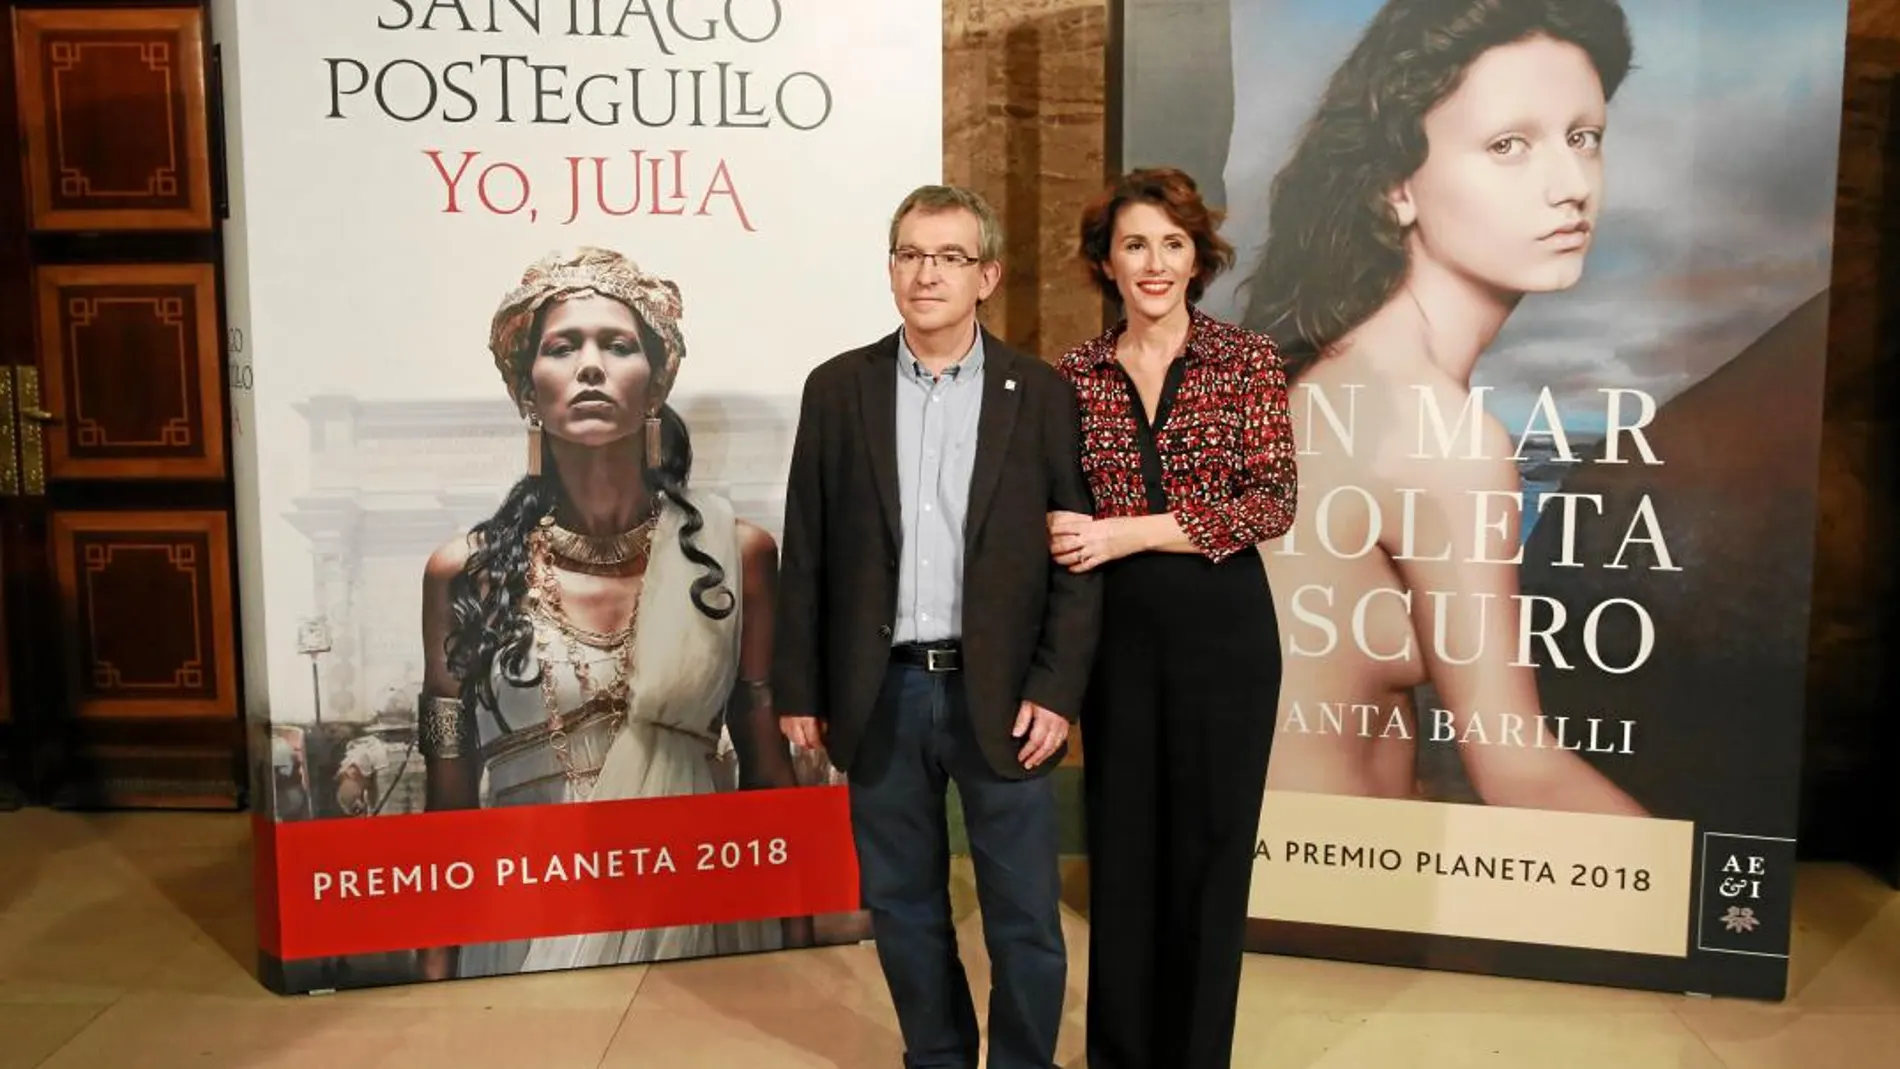 Santiago Posteguillo y Ayanta Barilli, durante la presentación de los Premios Planeta en Madrid, que tuvo lugar en el Instituto Cervantes / Foto: C. Pastrano